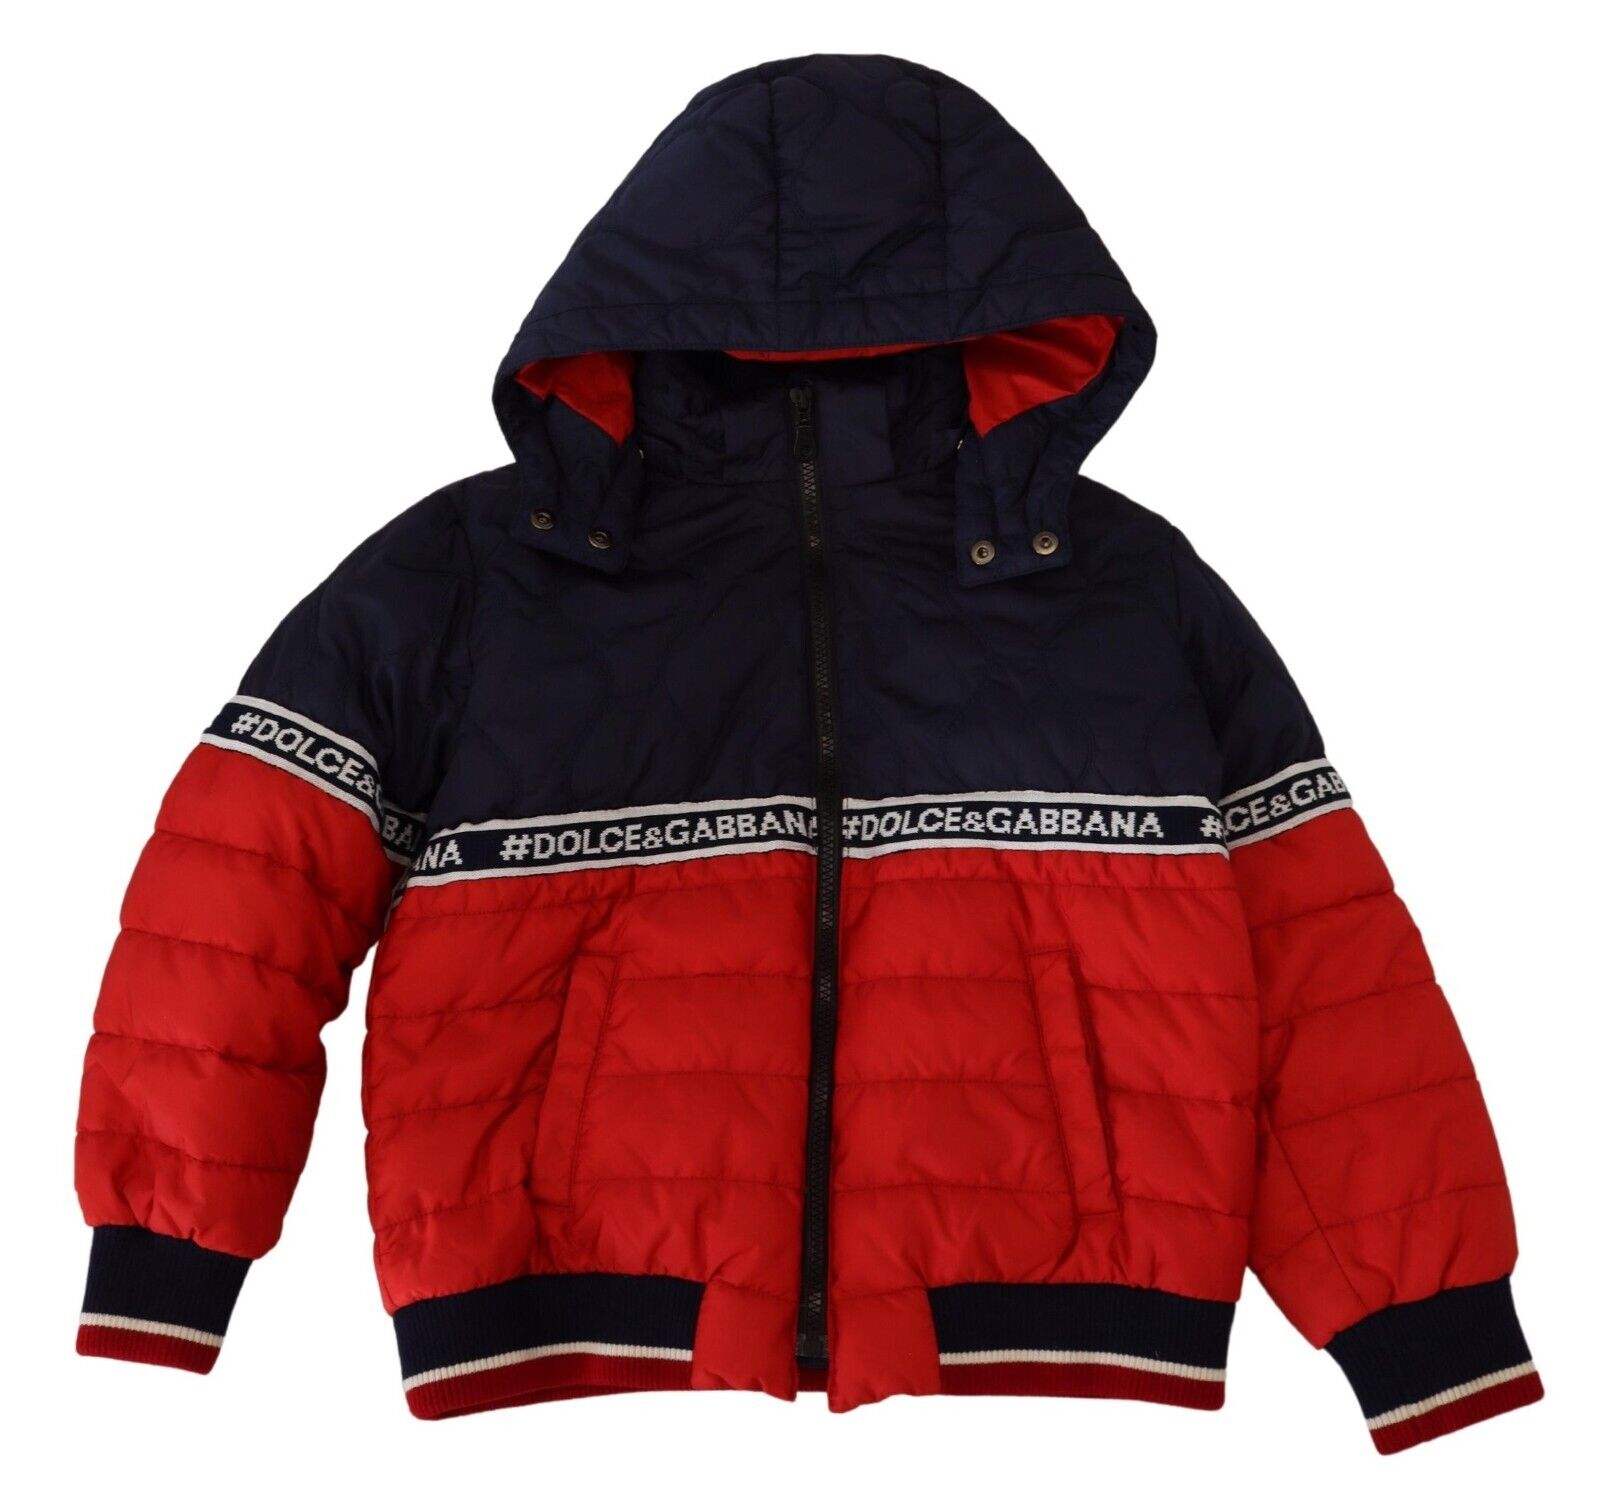 Детская куртка DOLCE & GABBANA с капюшоном, сине-красная, из нейлона, с принтом логотипа DG s. 8 лет $860